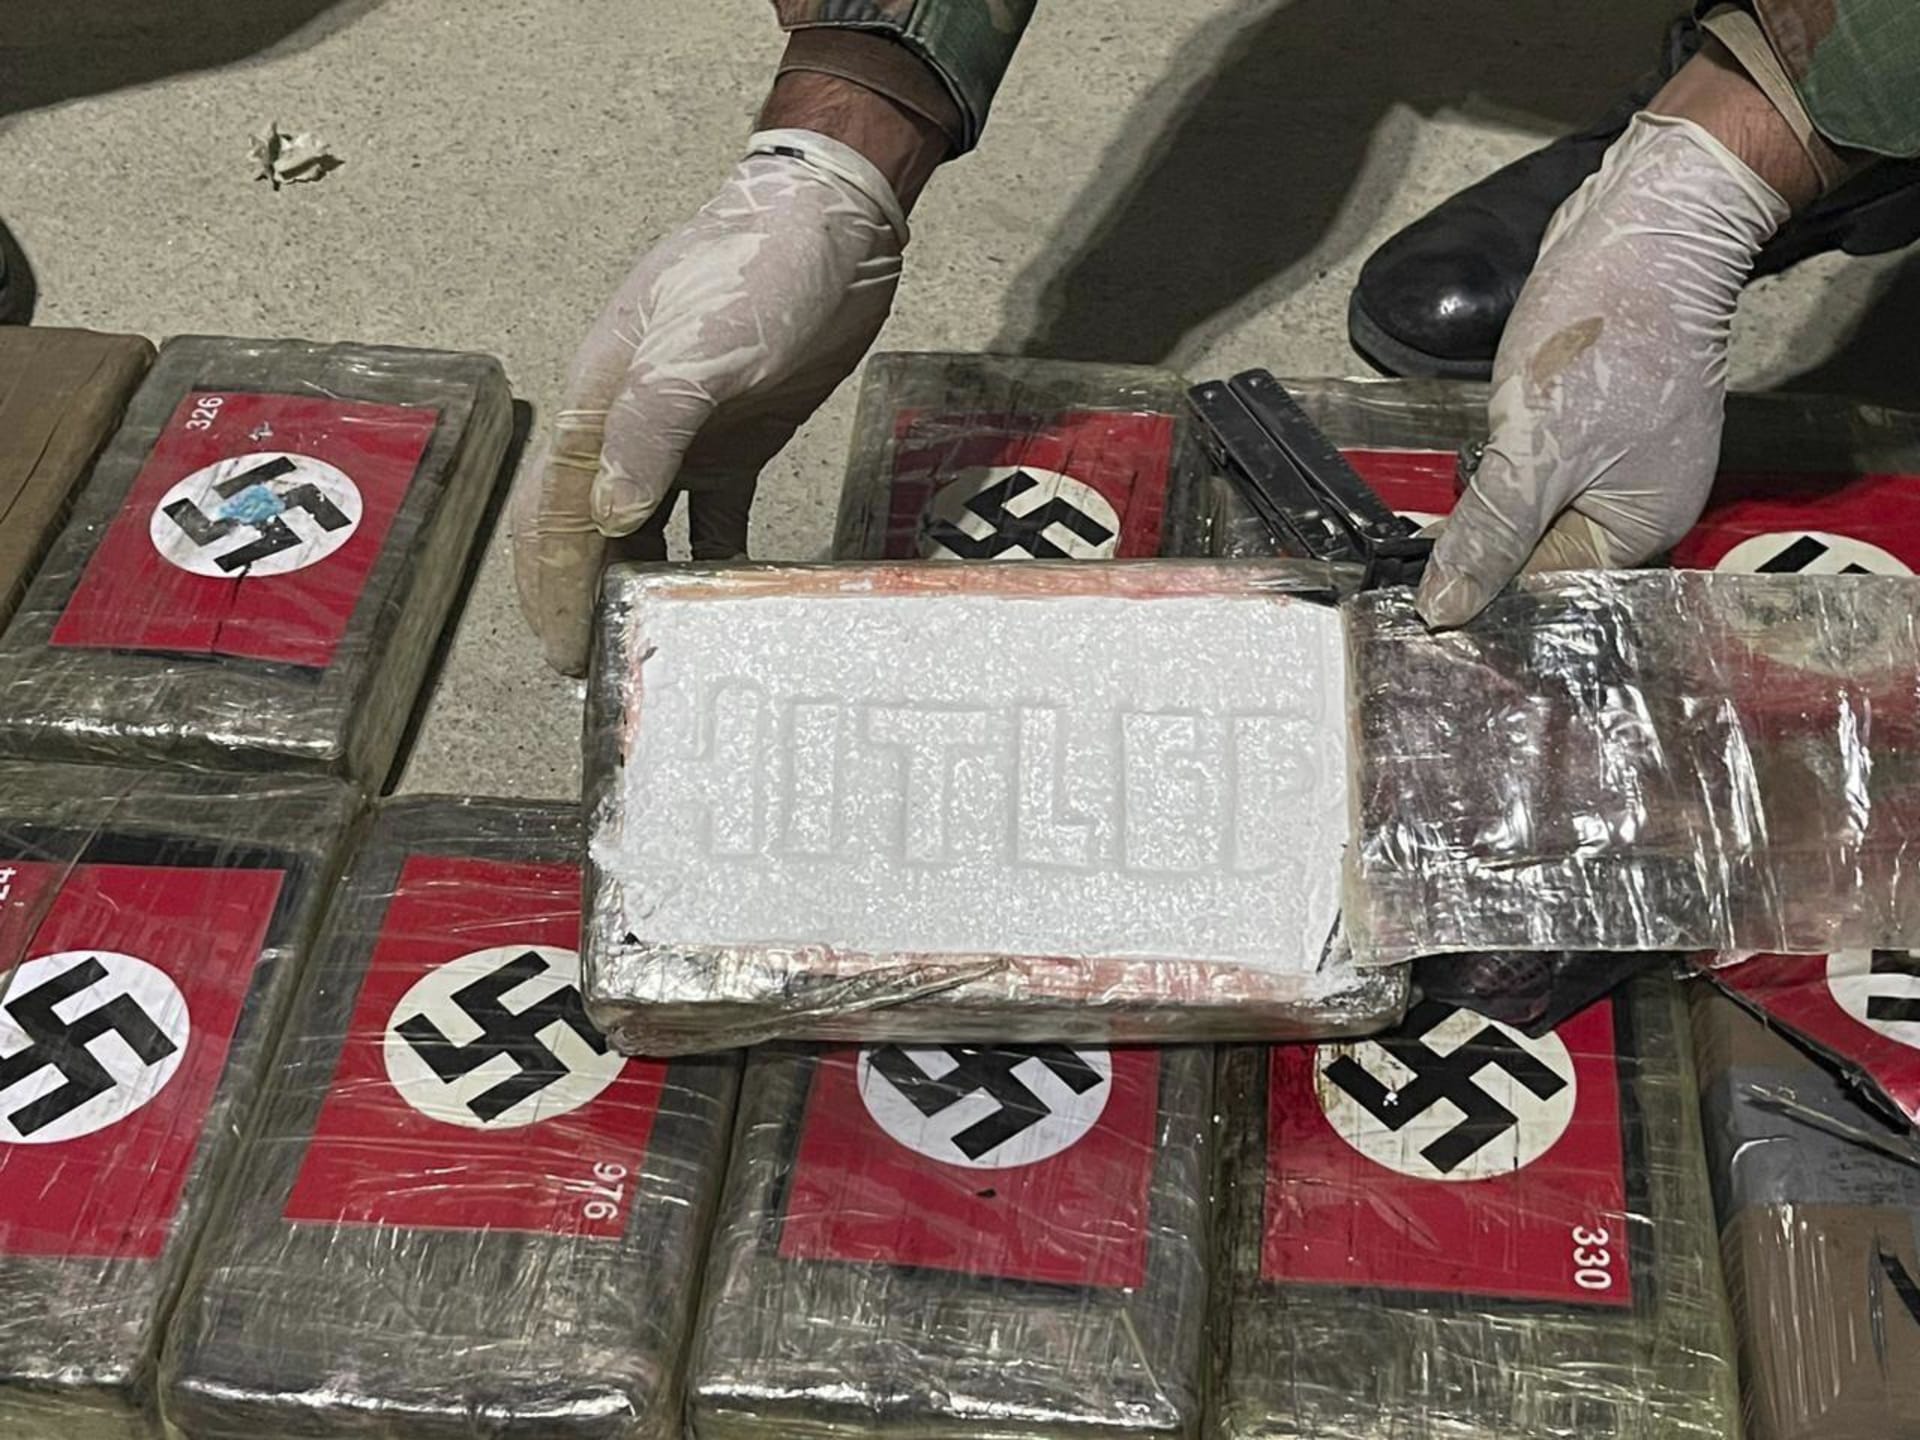 Kokain označený nacistickými hákovými kříži